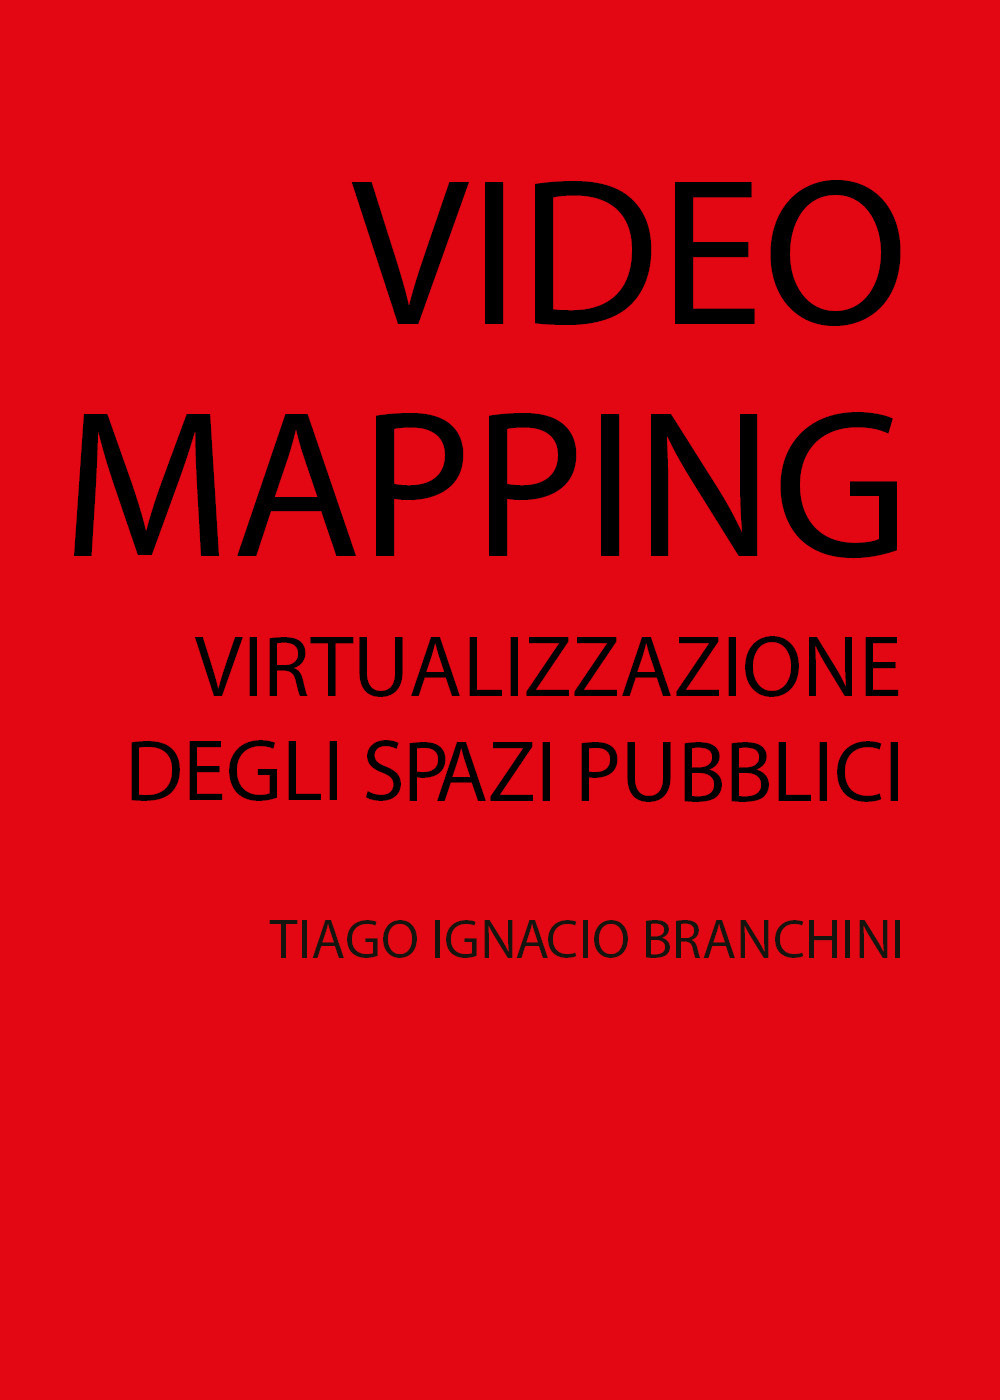 Libri Branchini Tiago Ignacio - Video Mapping: Virtualizzazione Degli Spazi Pubblici NUOVO SIGILLATO, EDIZIONE DEL 13/08/2019 SUBITO DISPONIBILE